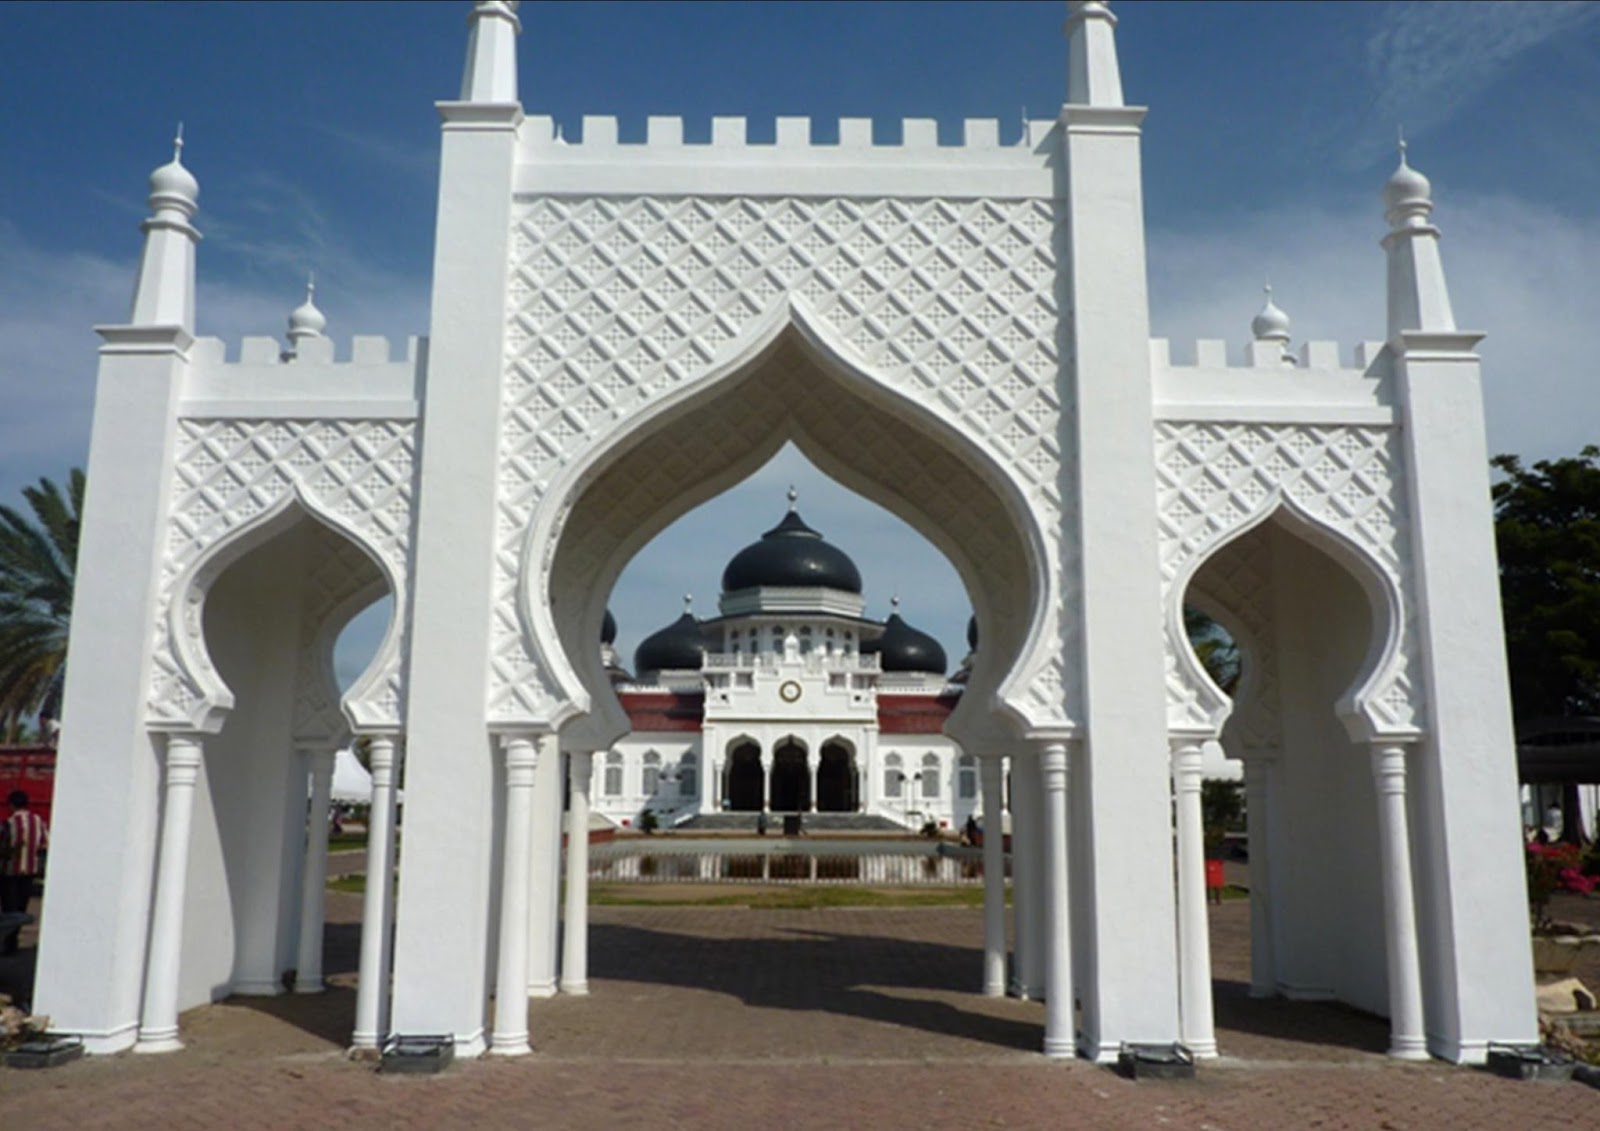 Keunikkan 12 Gambar Gapura Masjid Minimalis Dan Modern